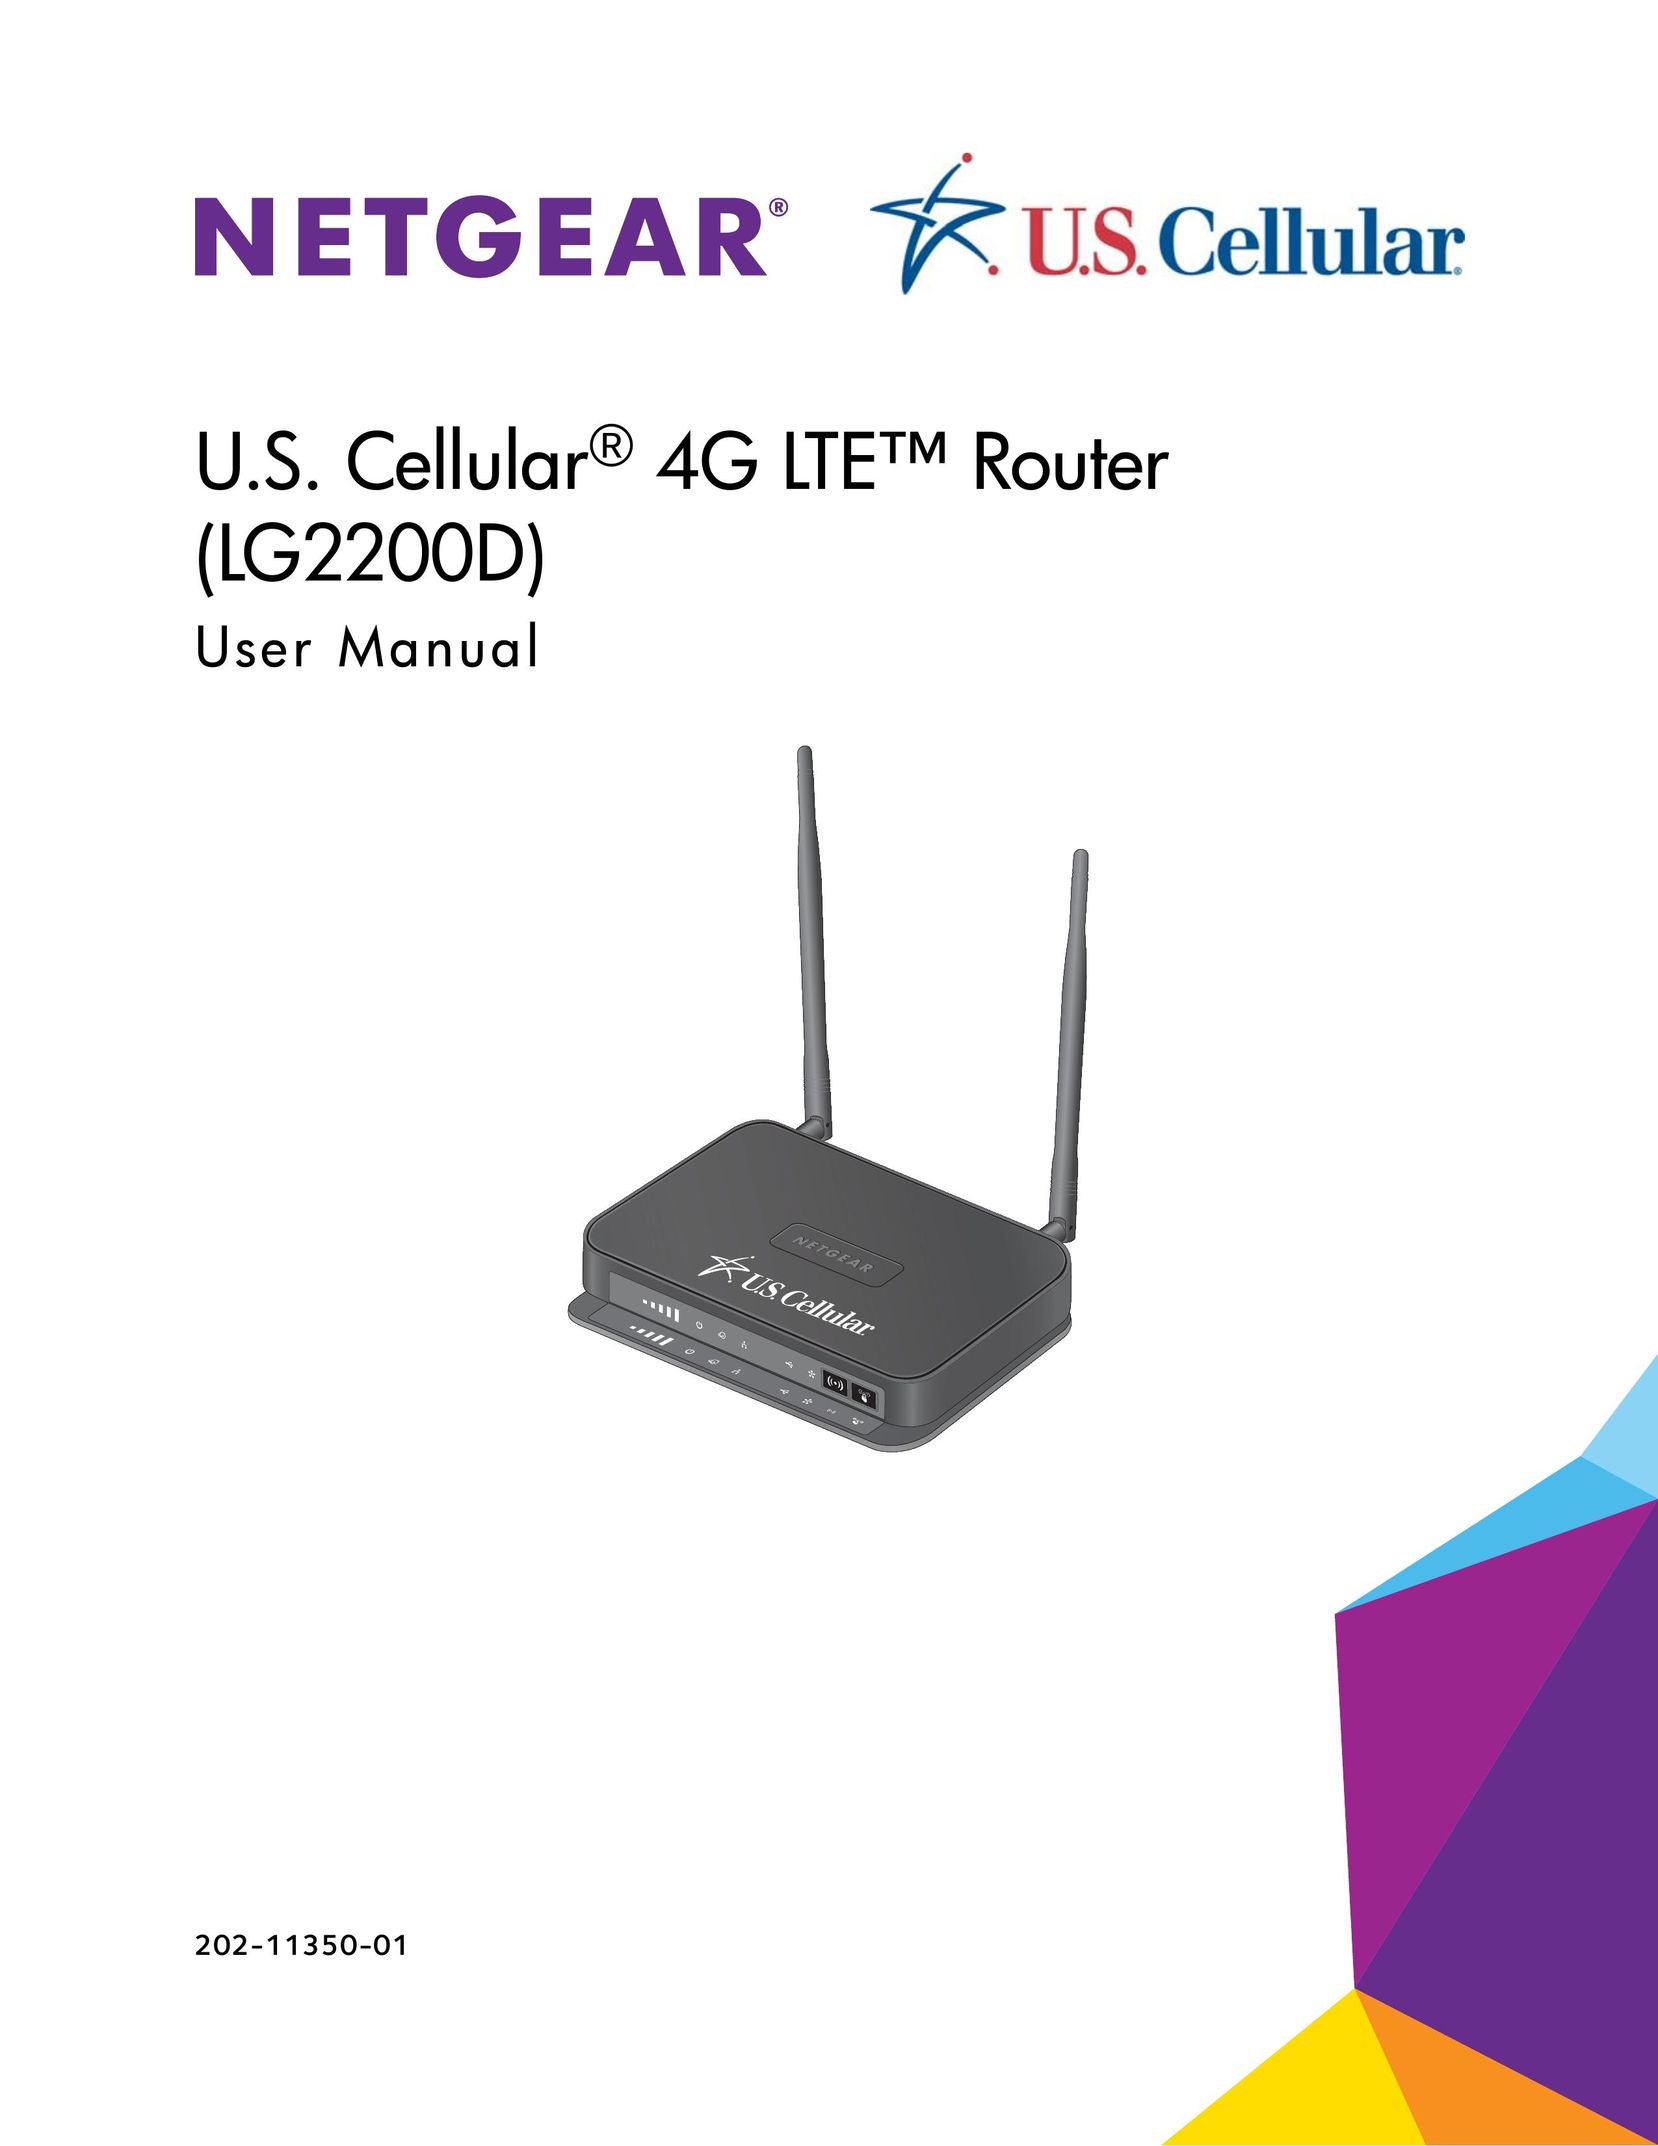 NETGEAR (LG2200D) Network Router User Manual